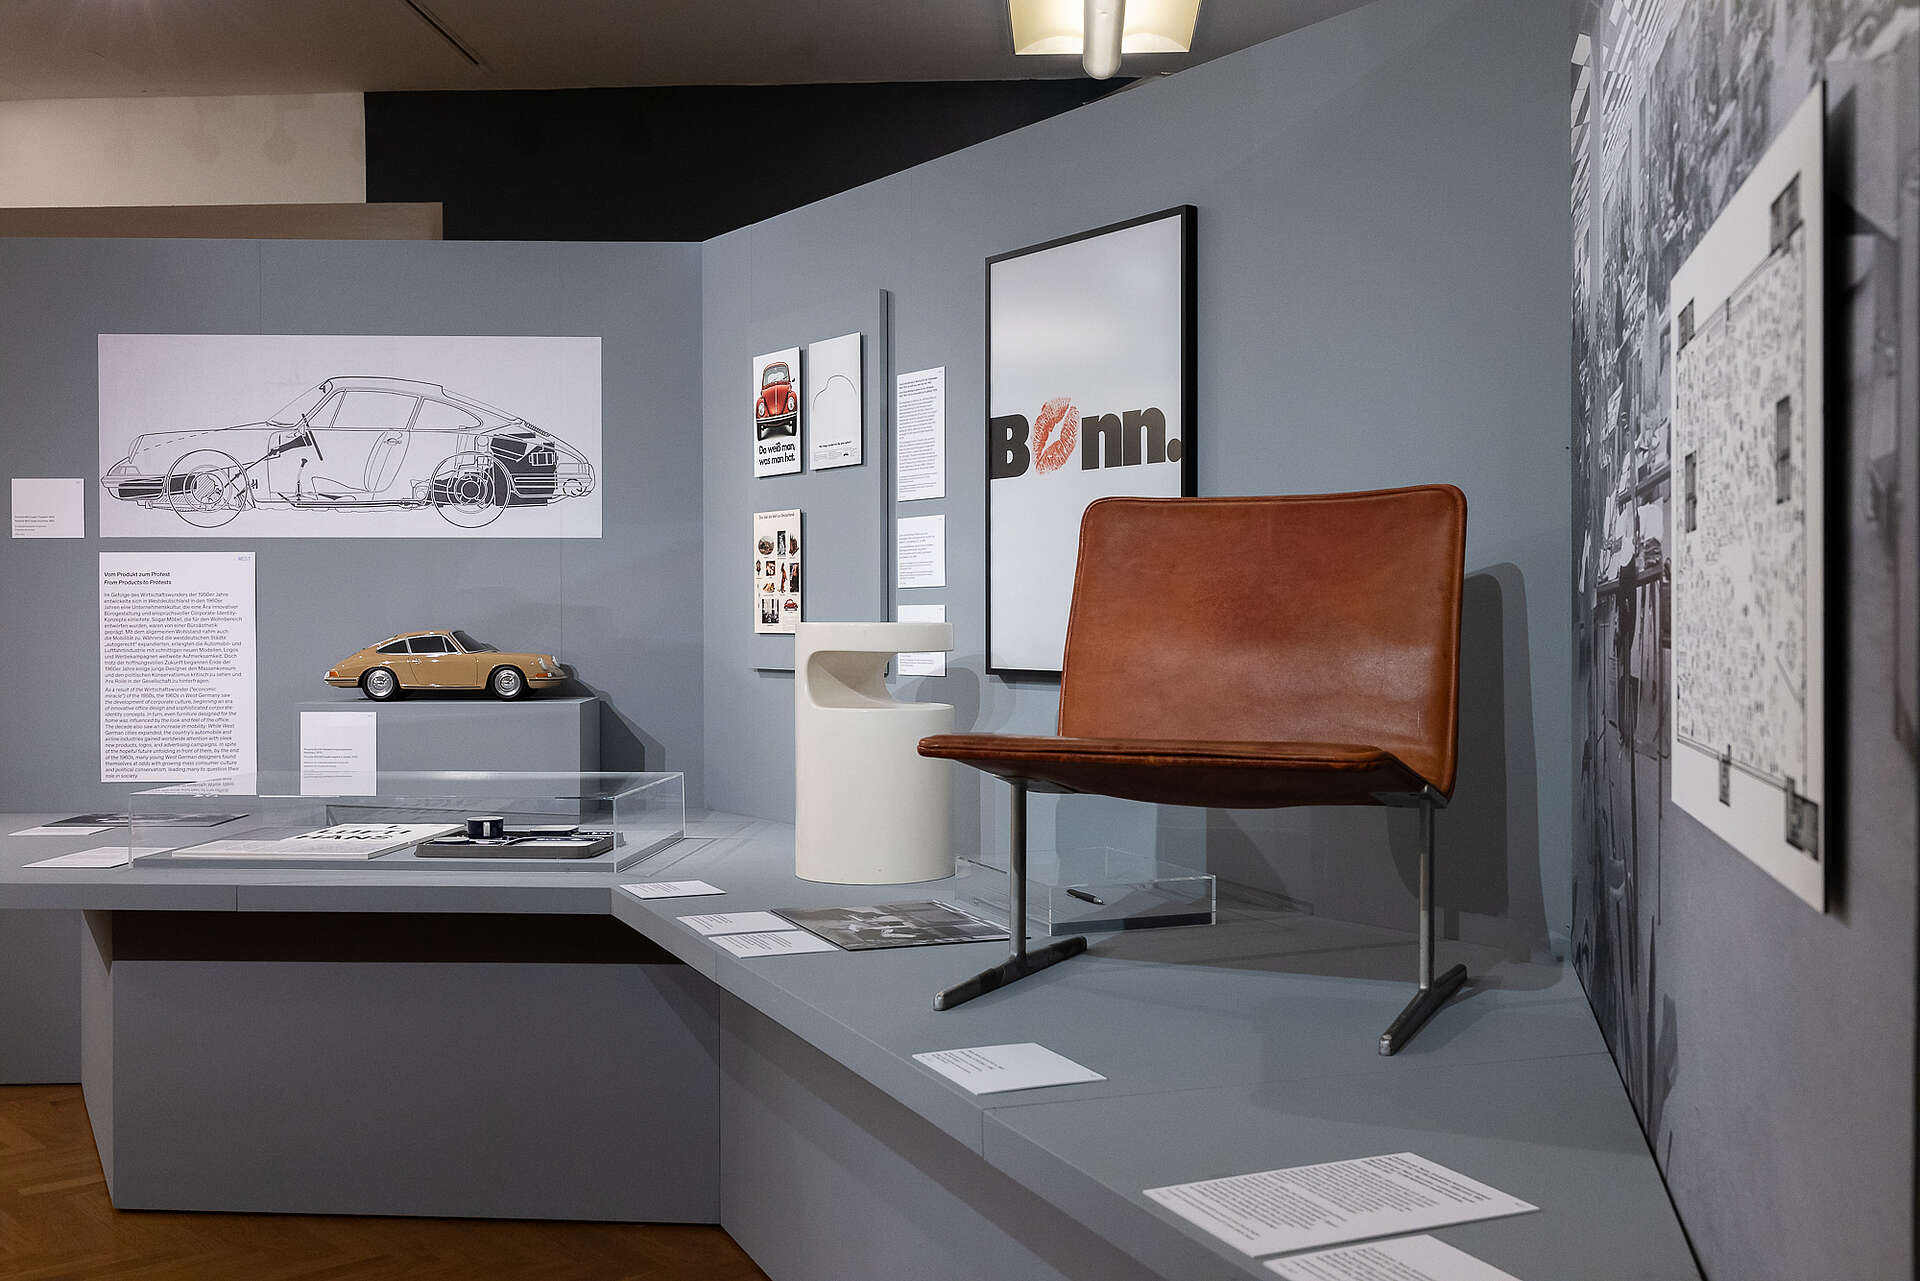 Deusches Design: Sessel, Bilder an der Wand, ein Modellauto